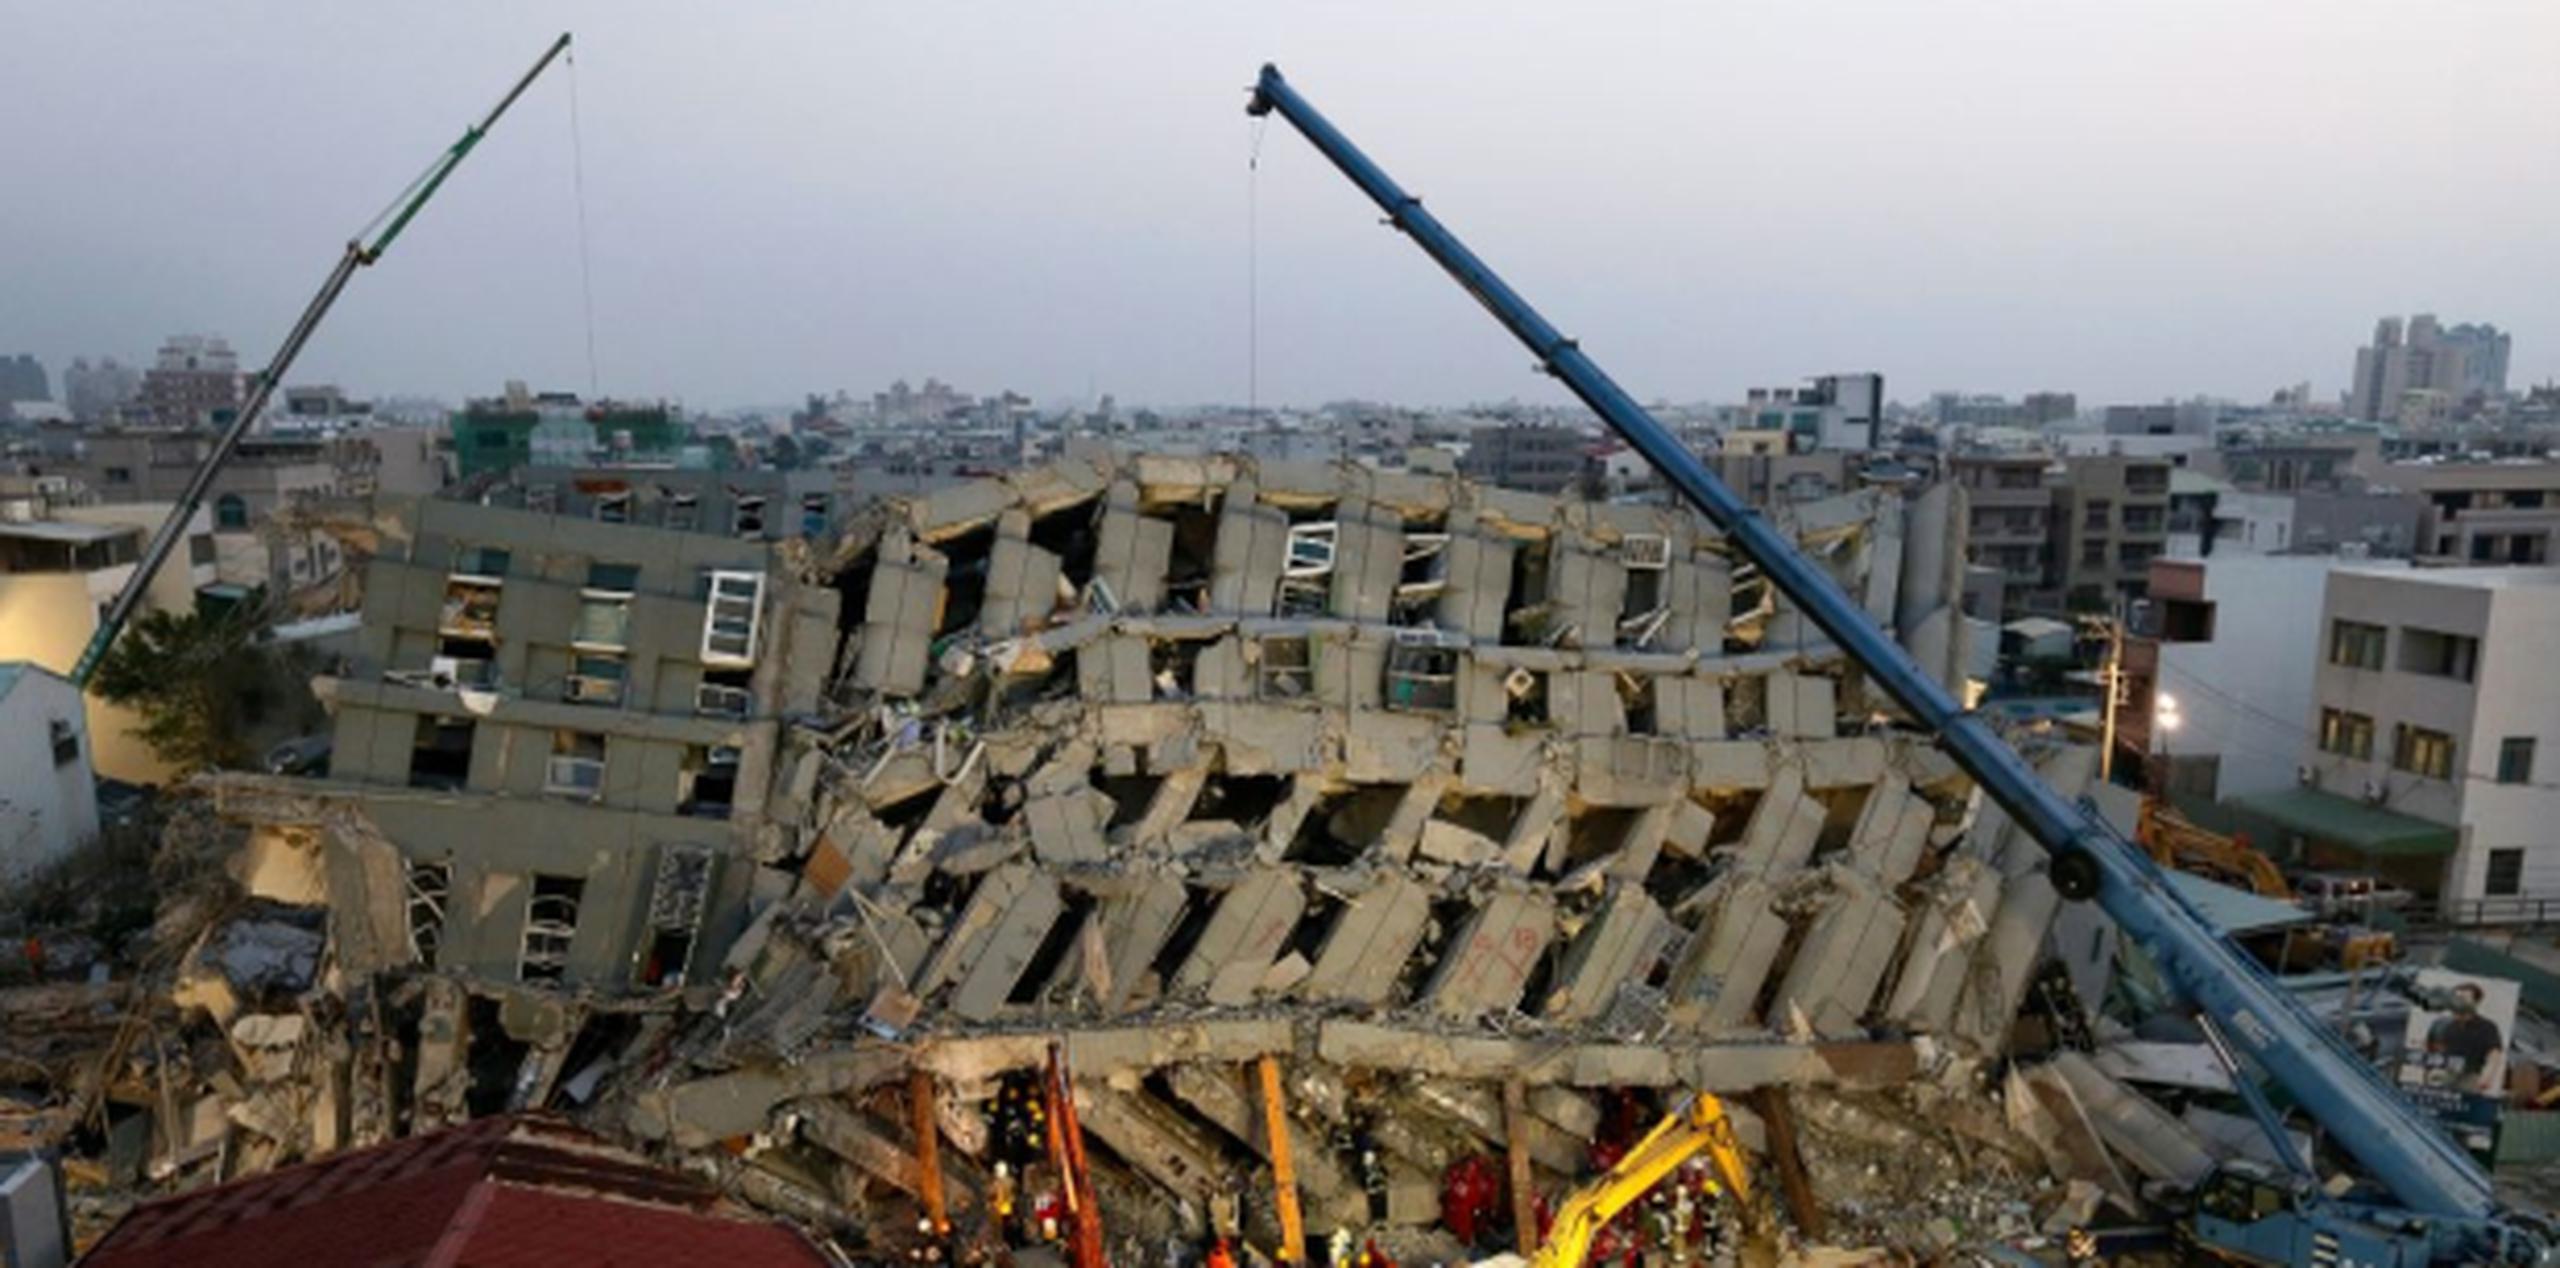 Autoridades han reportado unas 26 personas muertas tras el sismo. (EFE)